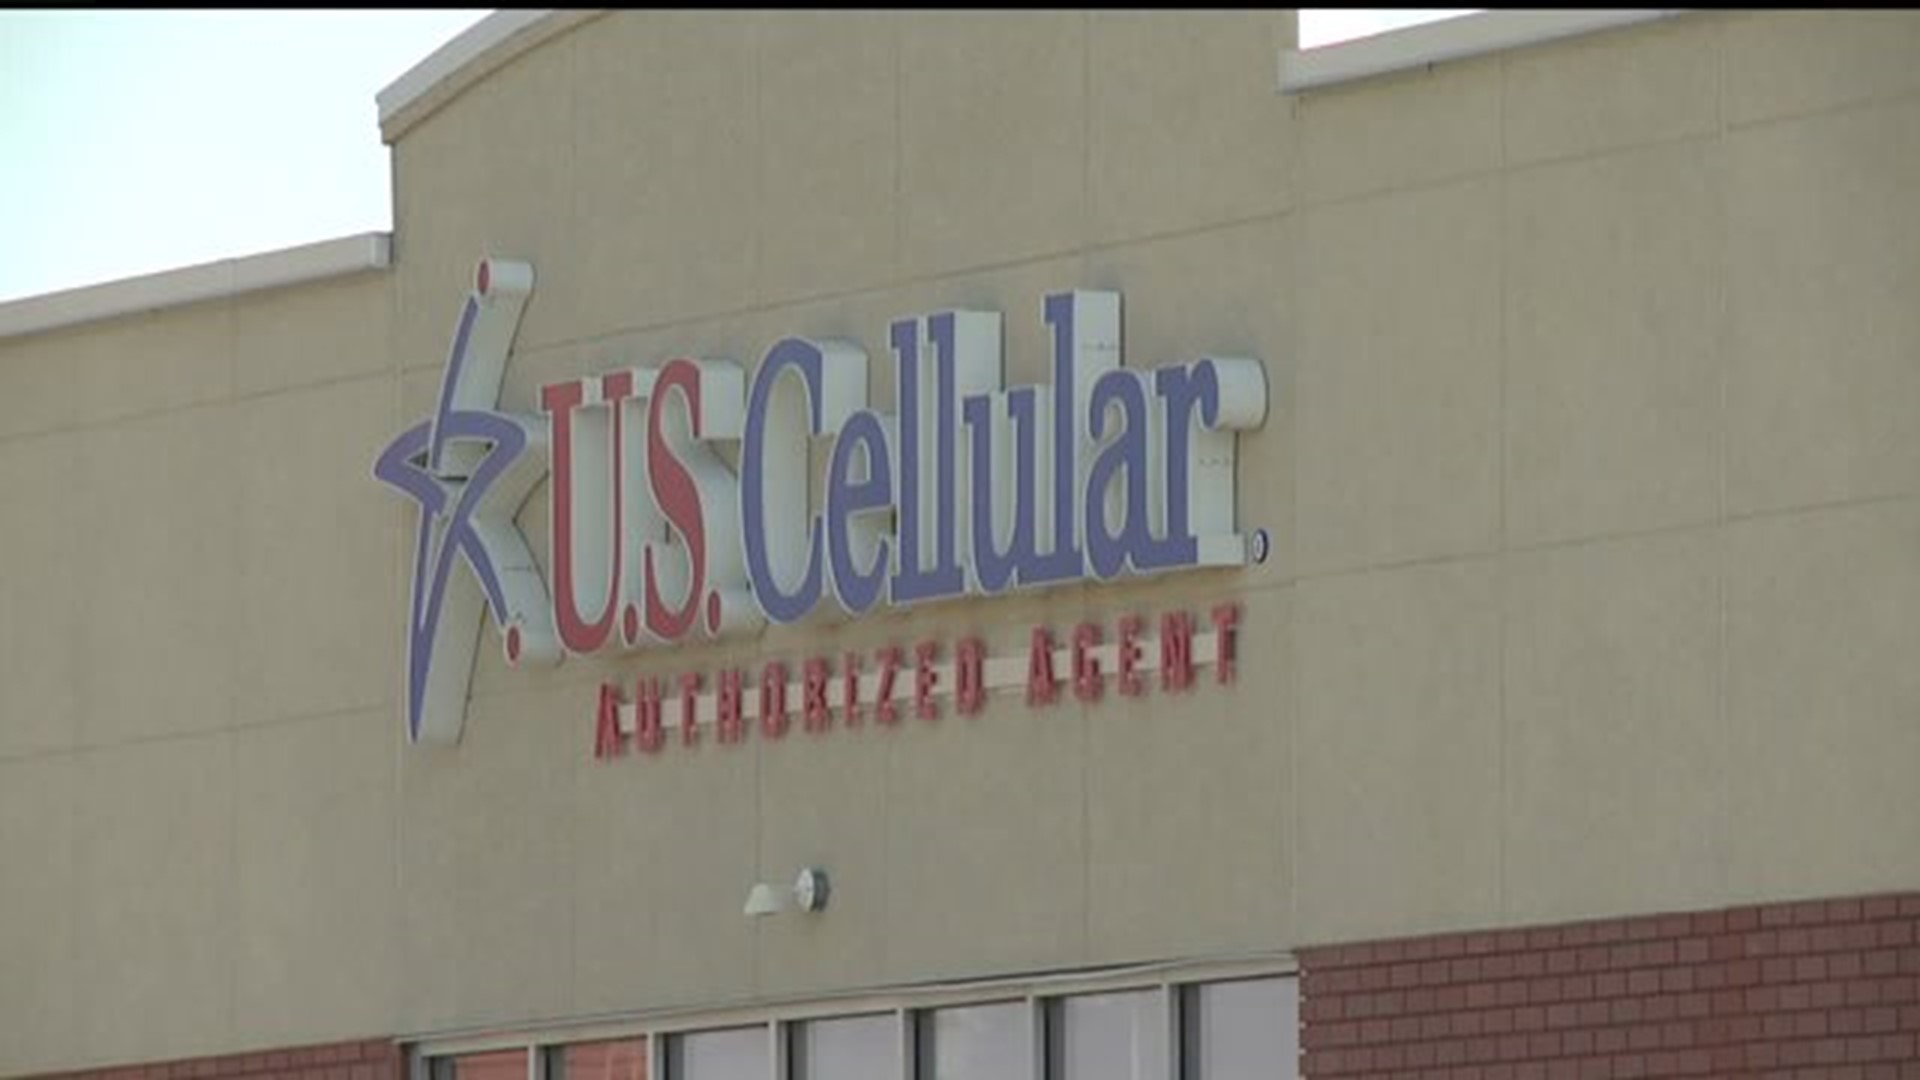 U.S. Cellular store robbed in Eldridge